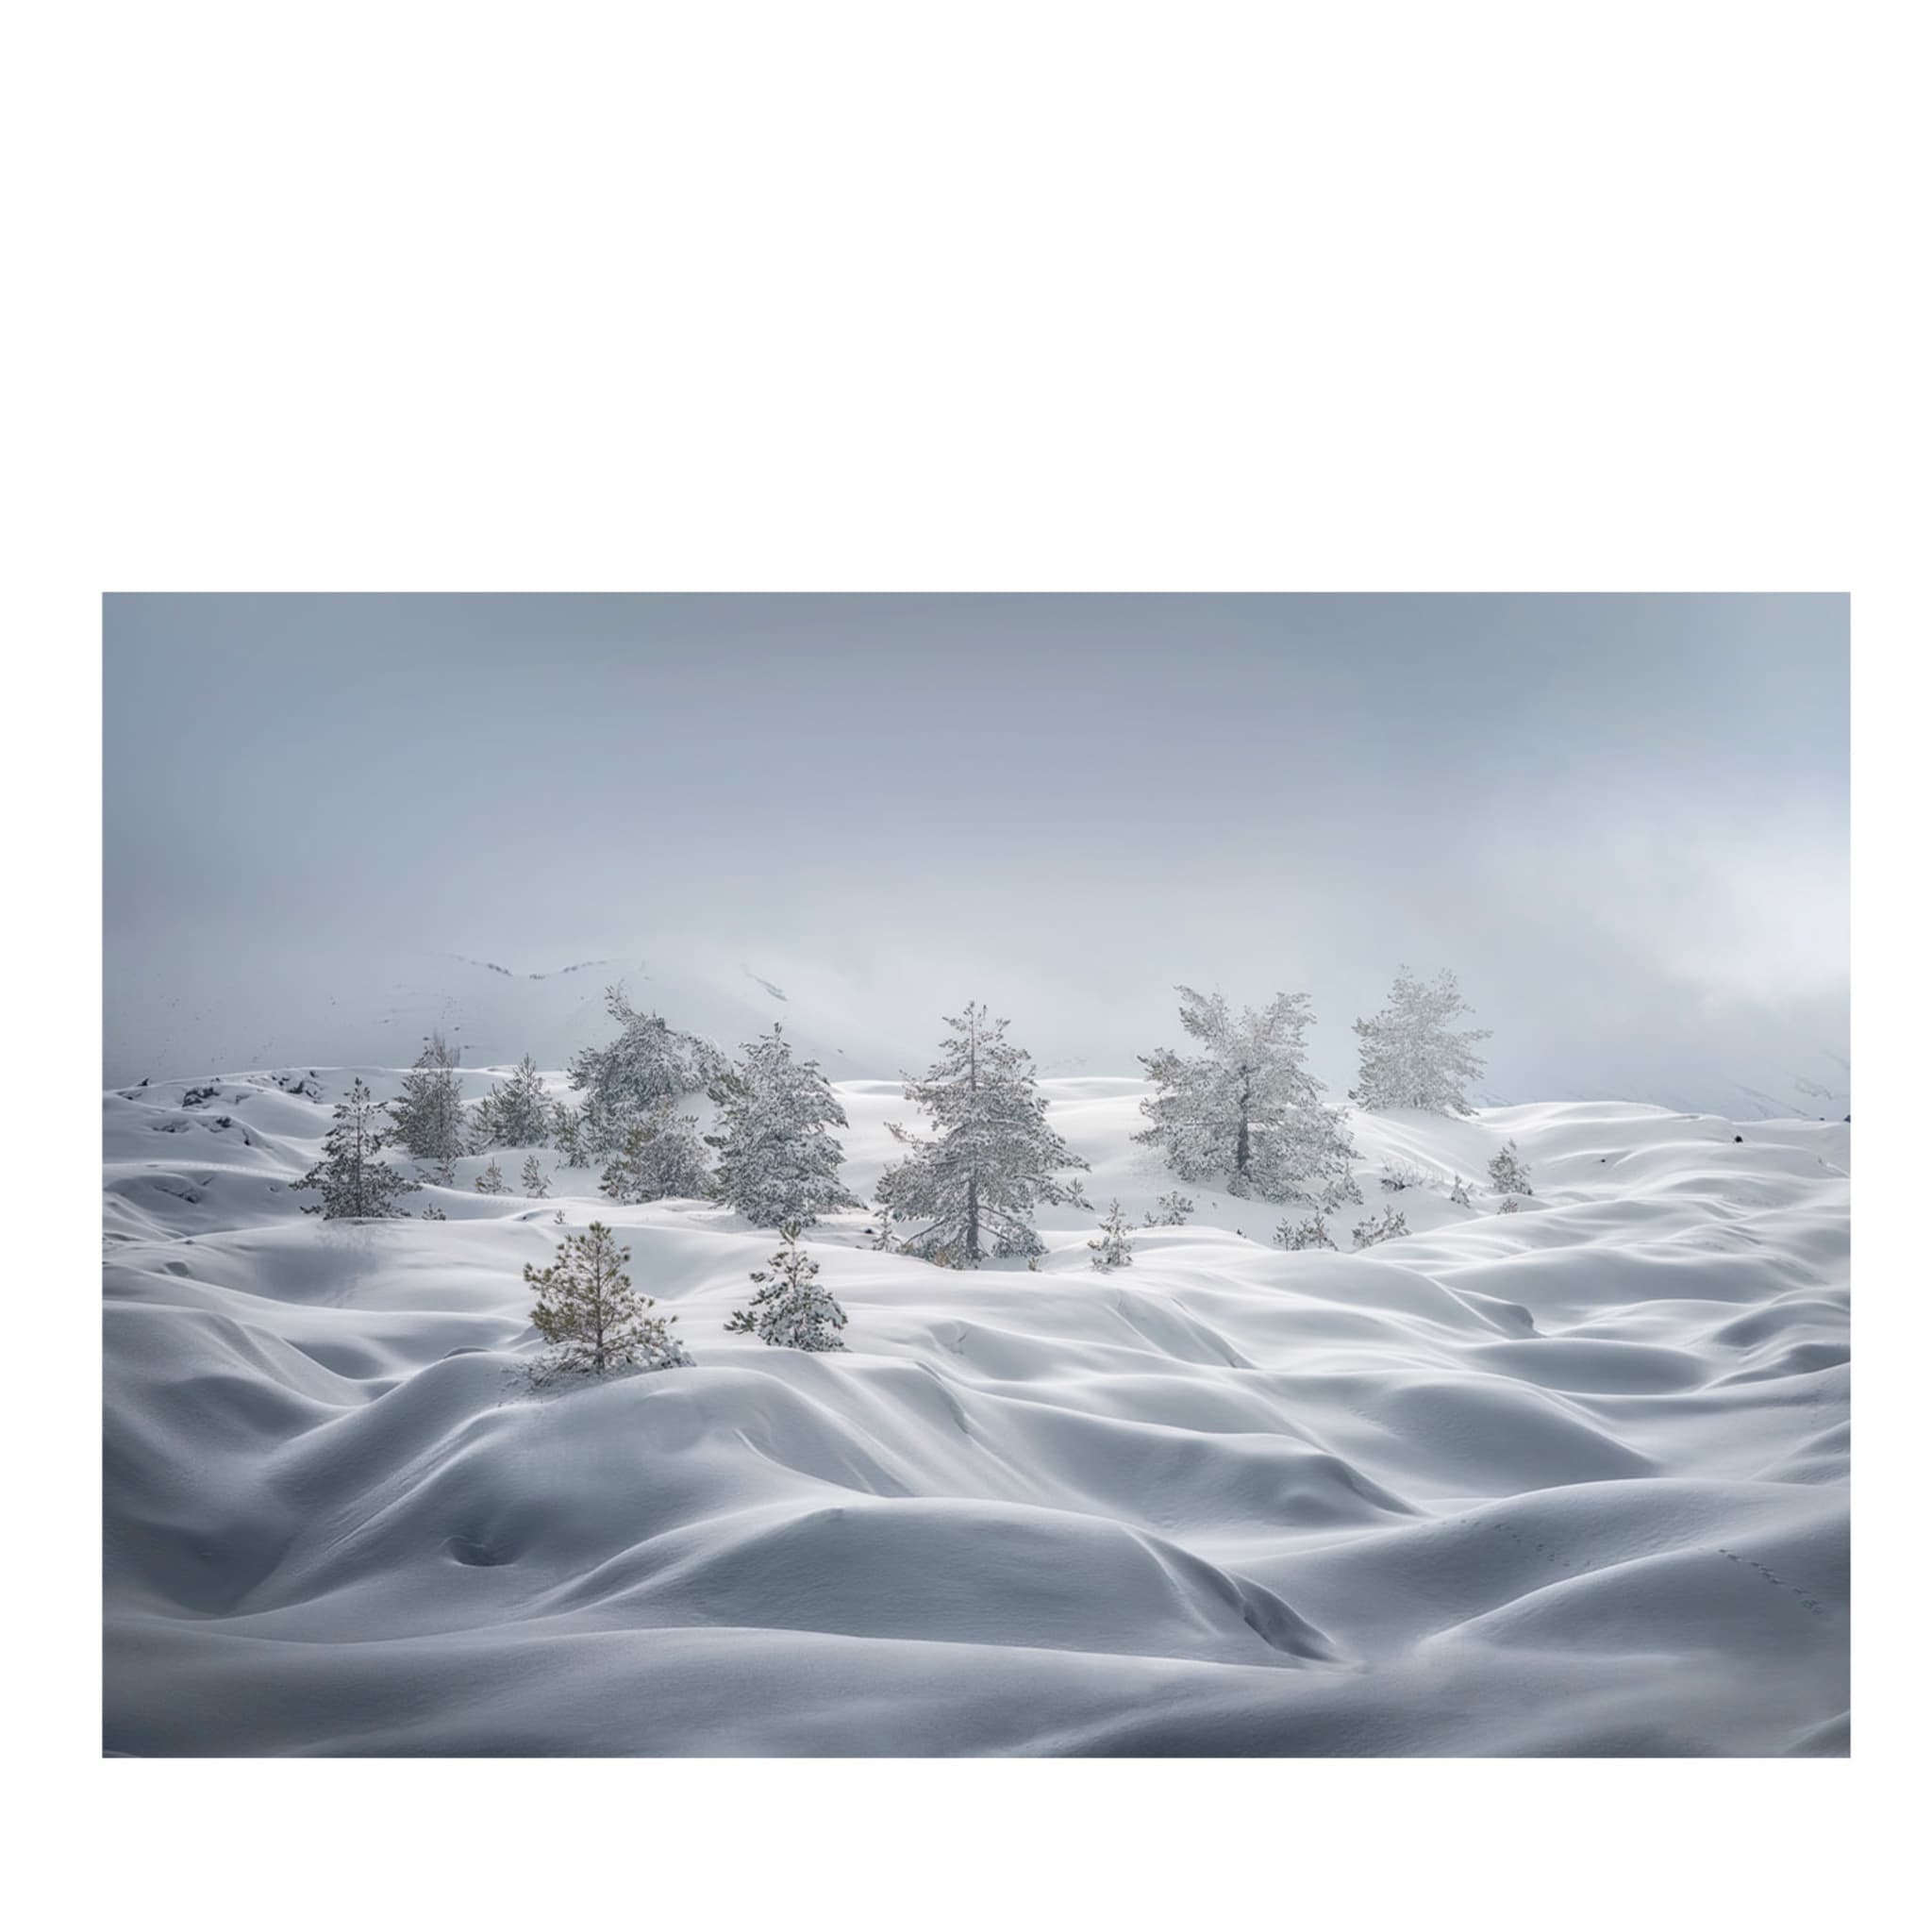 Stampa fotografica sulle dune di neve - Vista principale